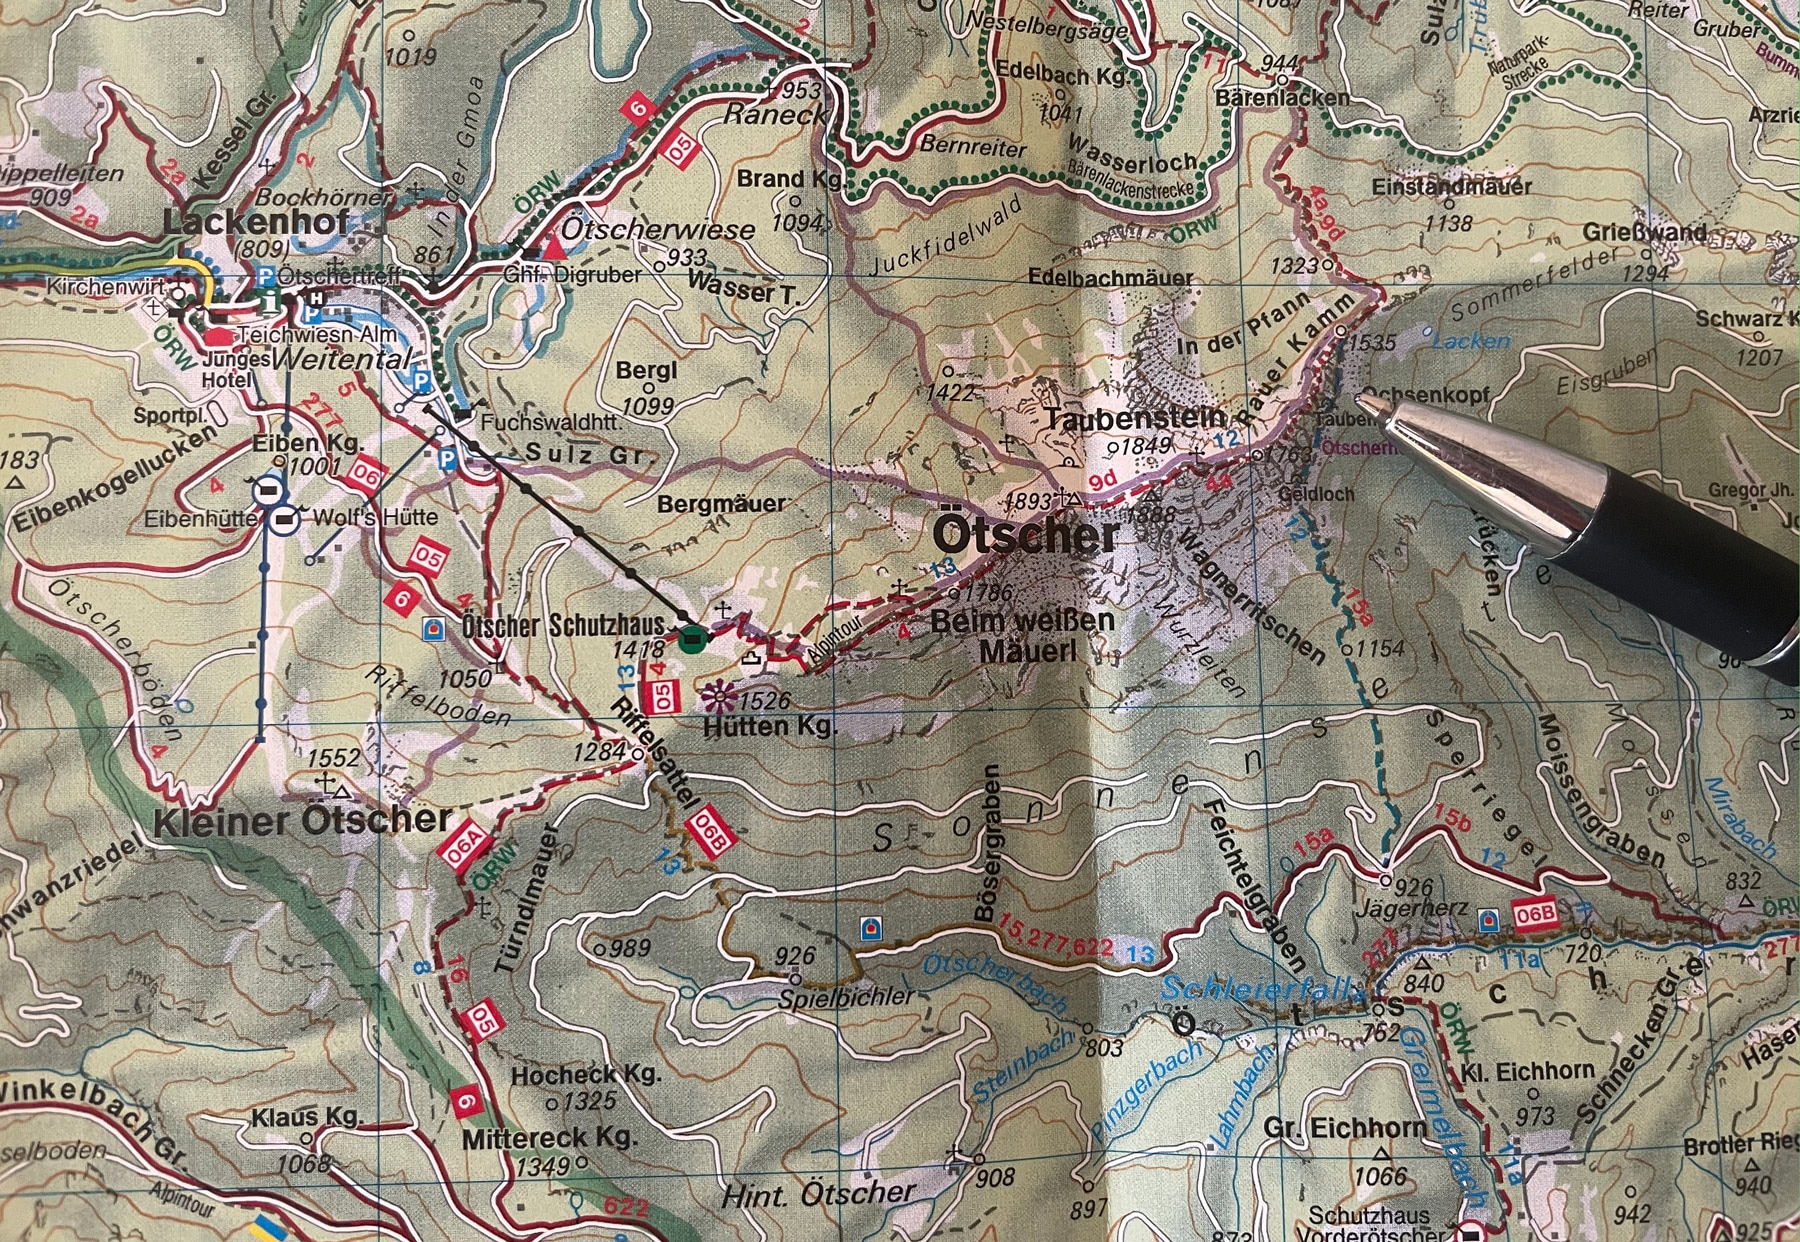 Bei der Tourenplanung sollen Schlüsselstellen identifiziert werden – hier der Abschnitt "Alpiner Steig" am Rauhen Kamm